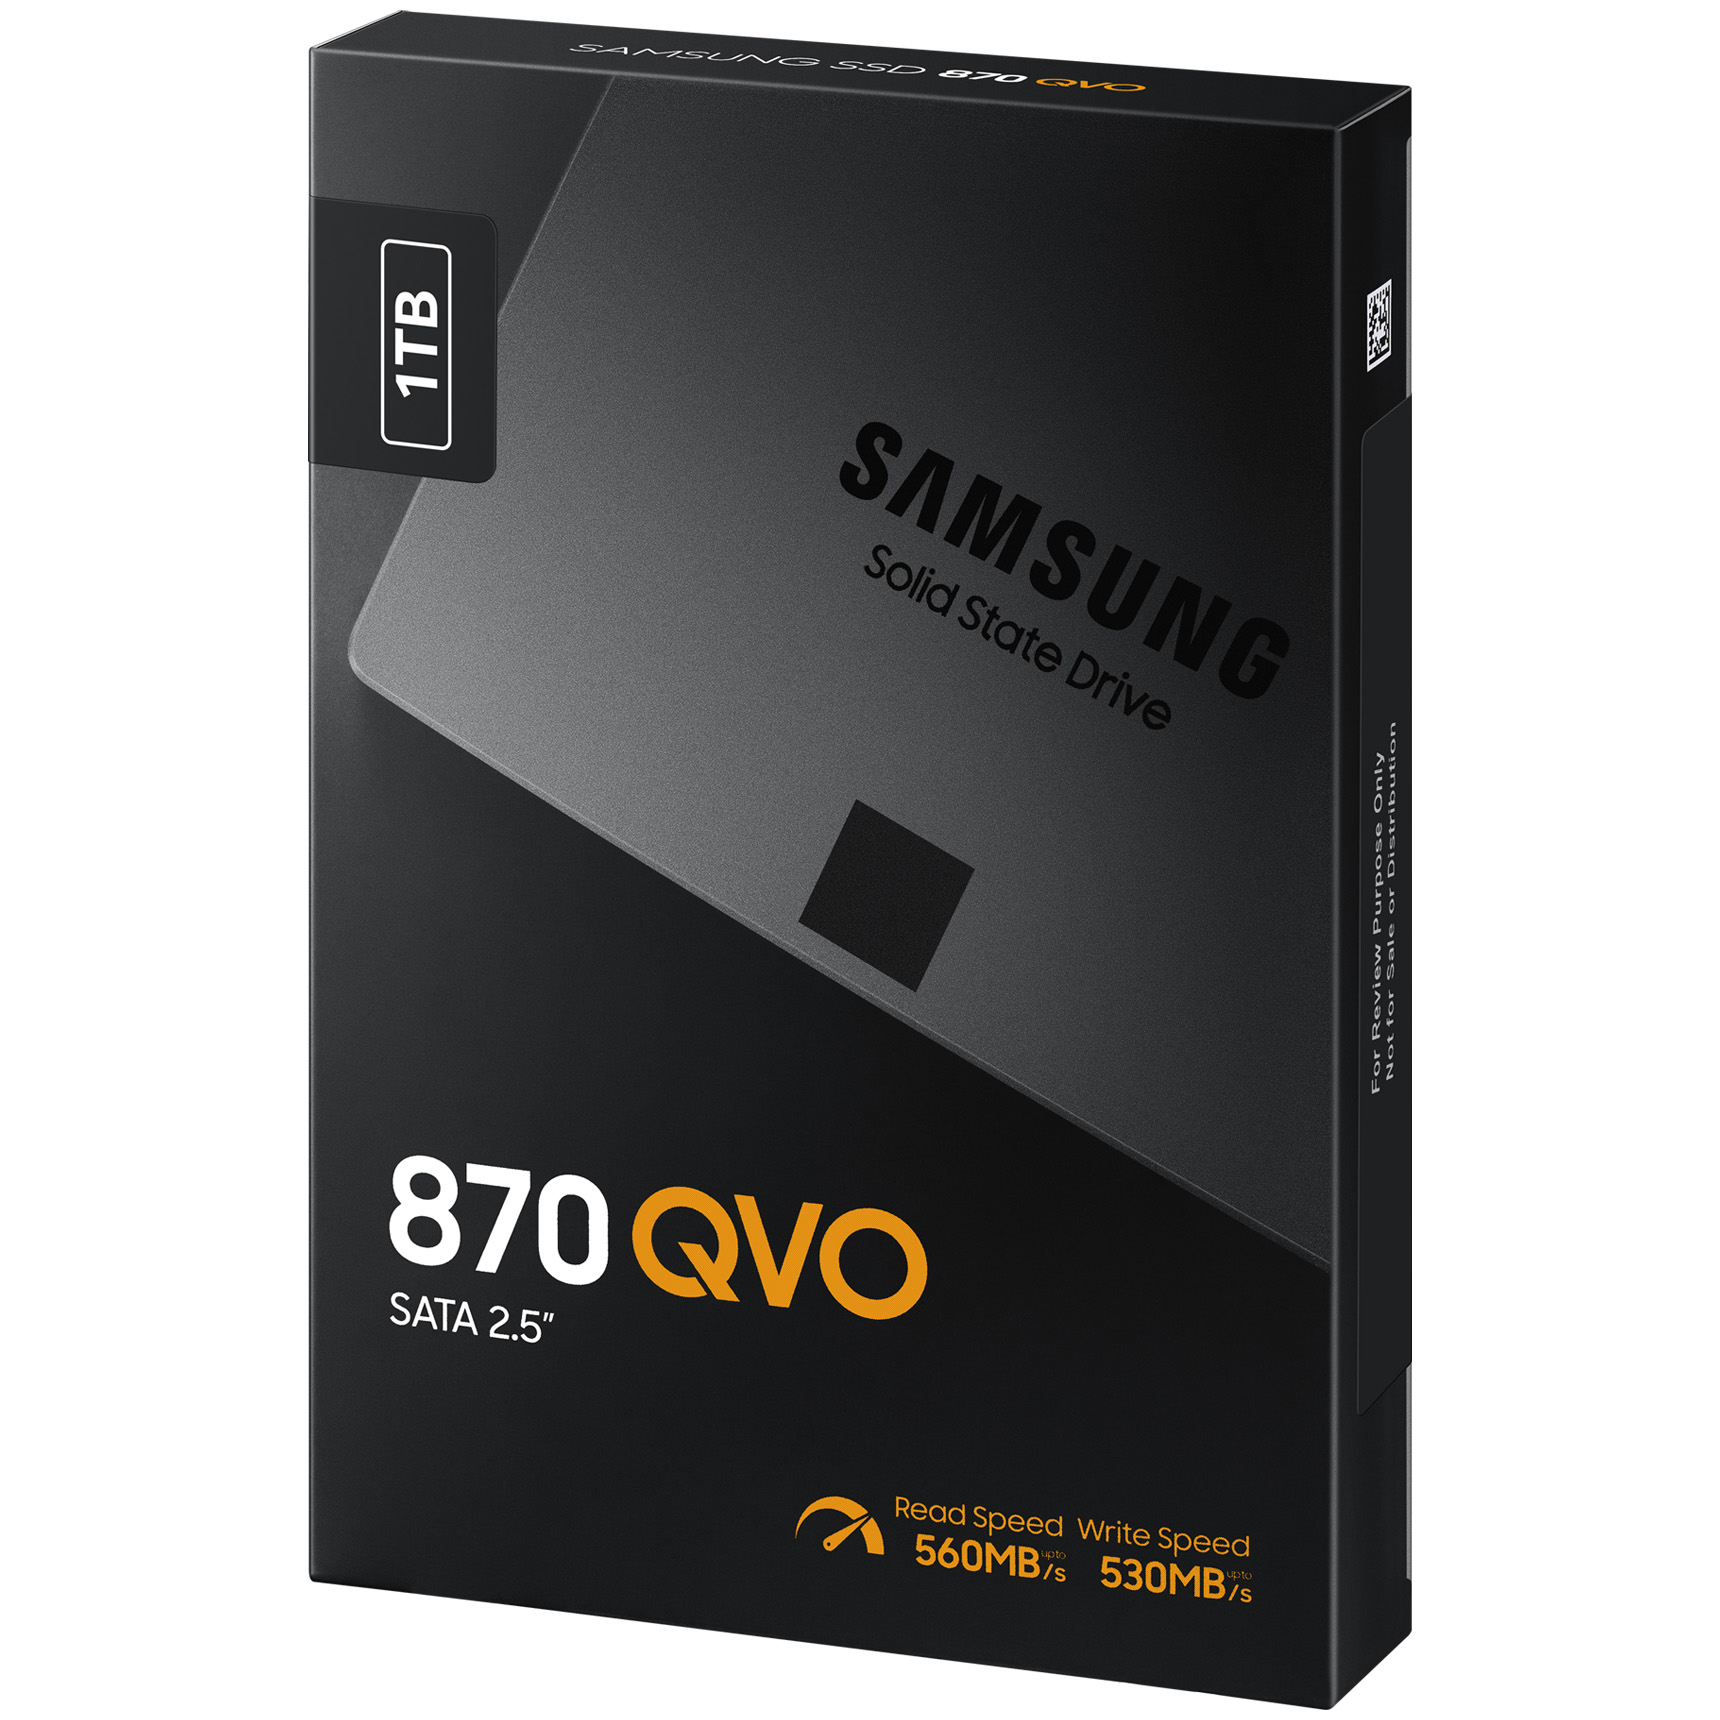 新品未開封 Samsung 870QVO 1TB SSD 2.5インチ